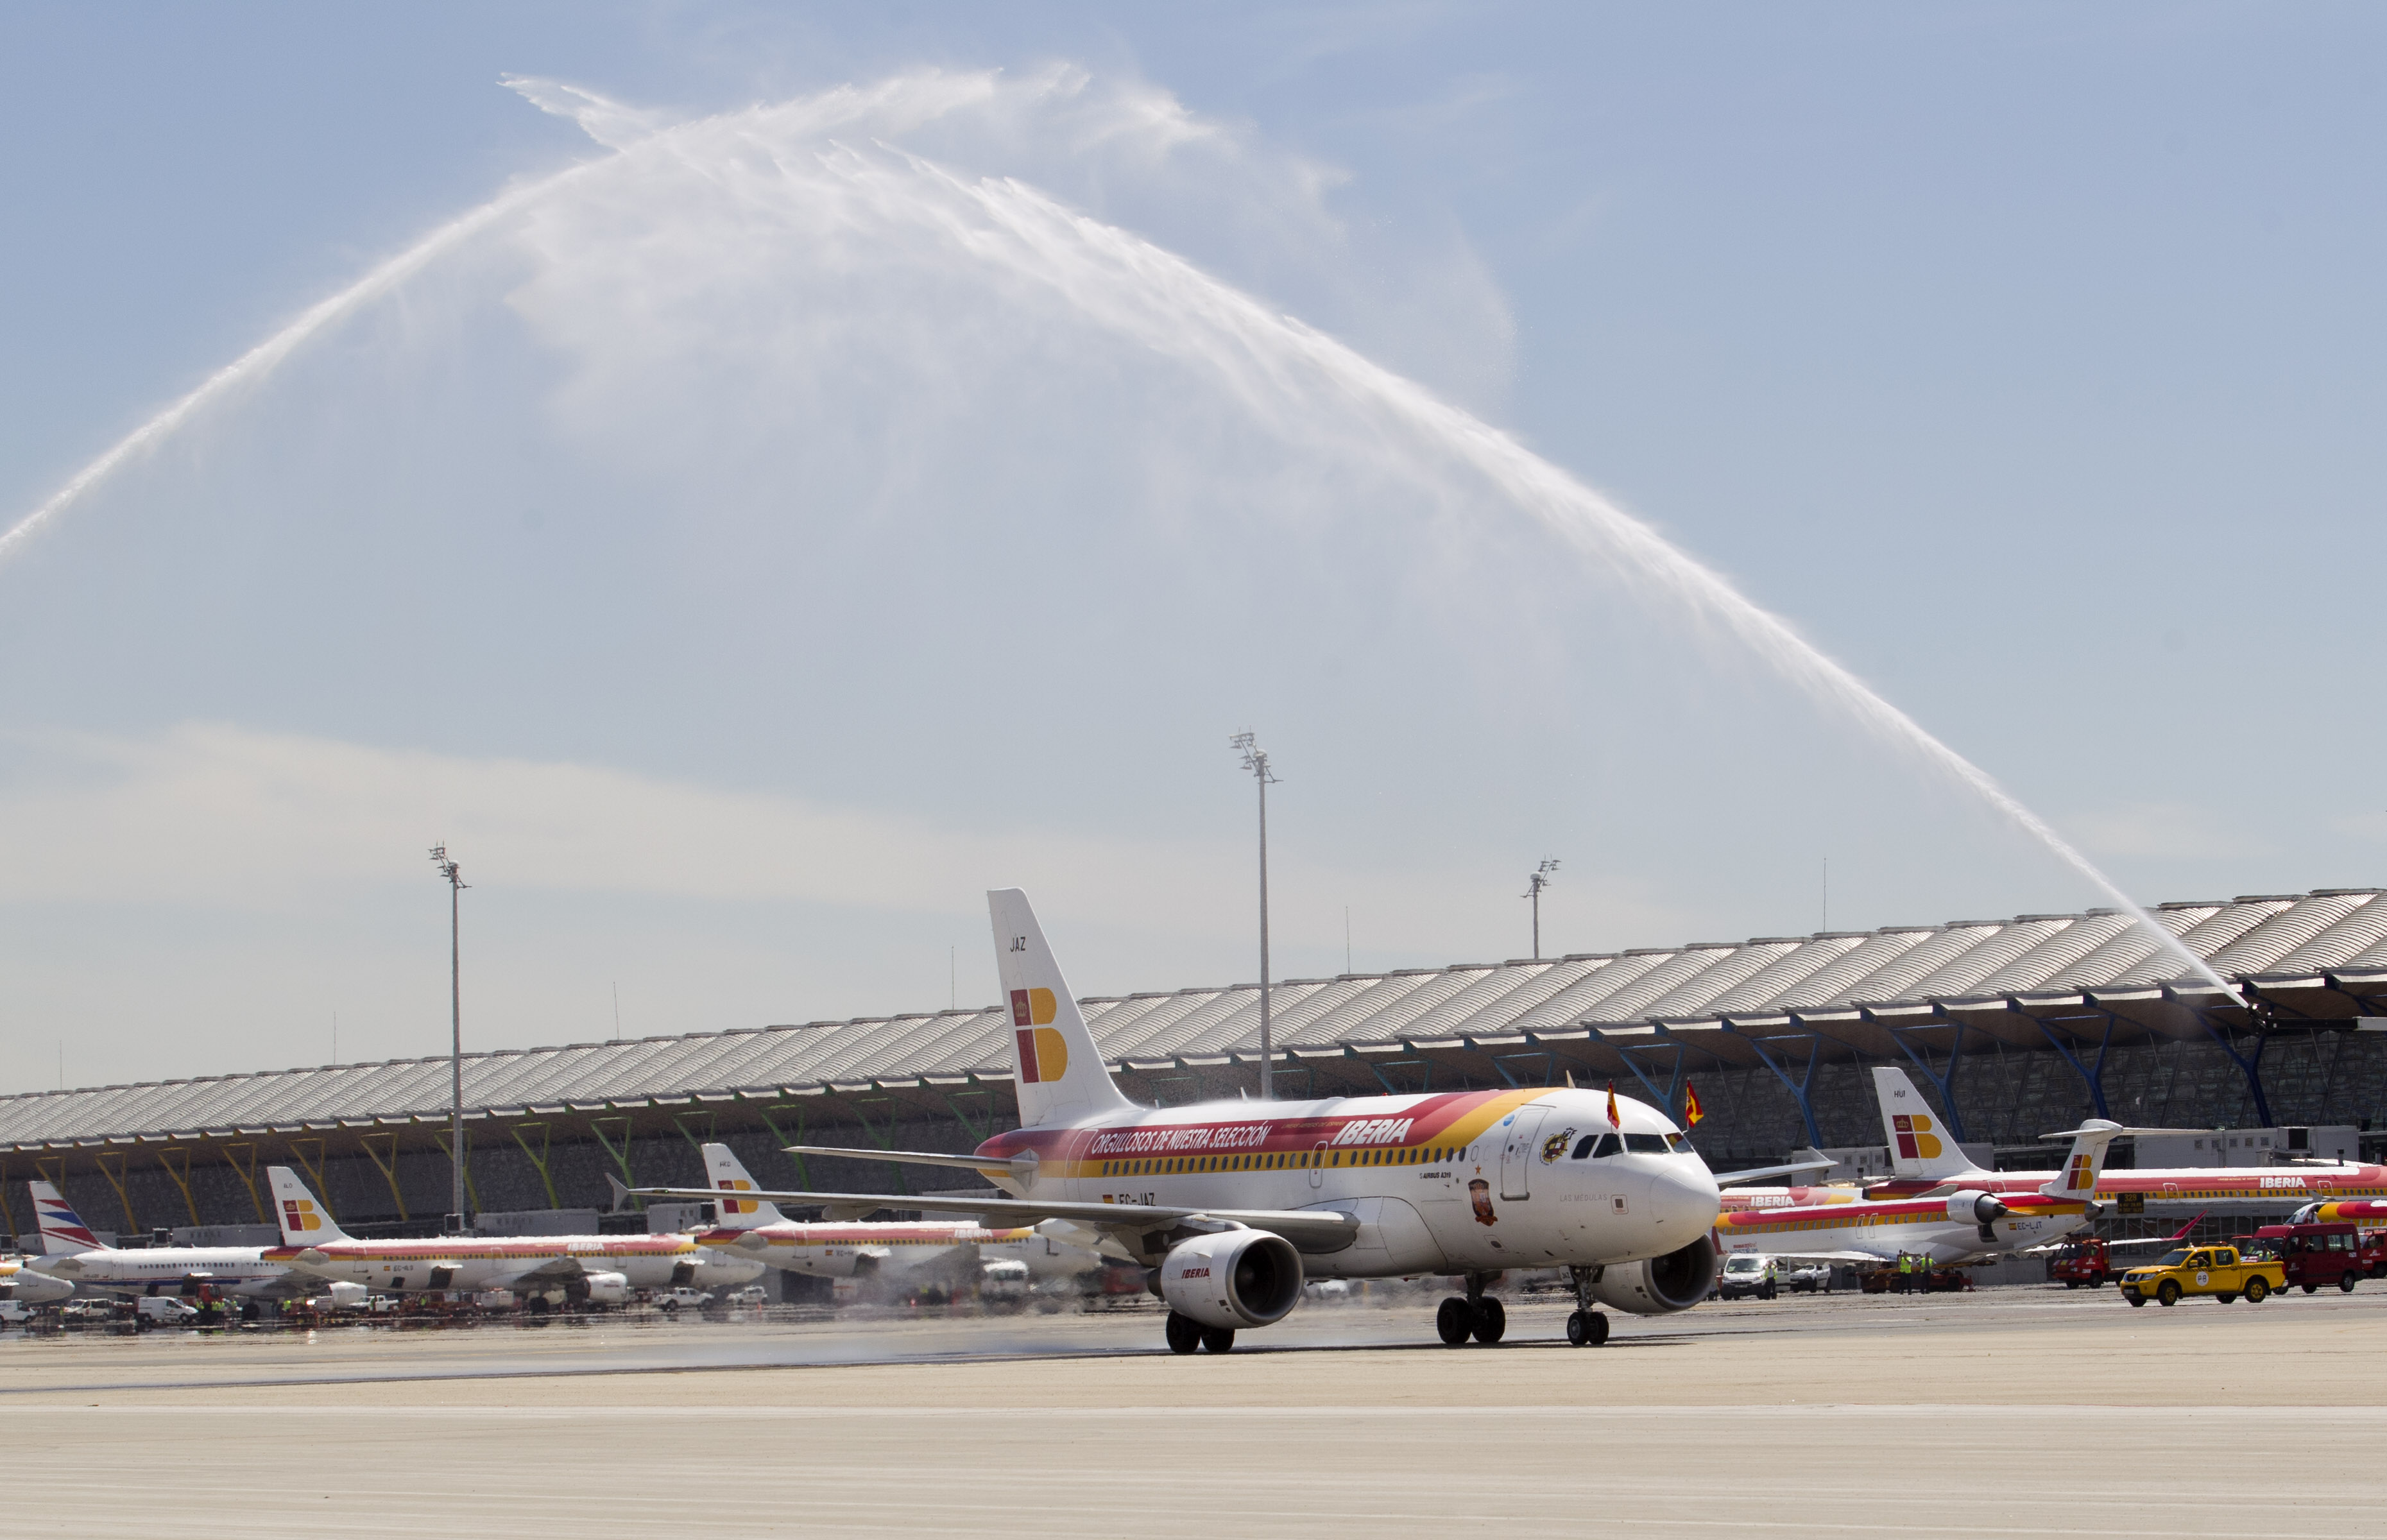 Brandbilar hyllade landslaget när de landade i Madrid genom att spruta vatten över flygplanet.